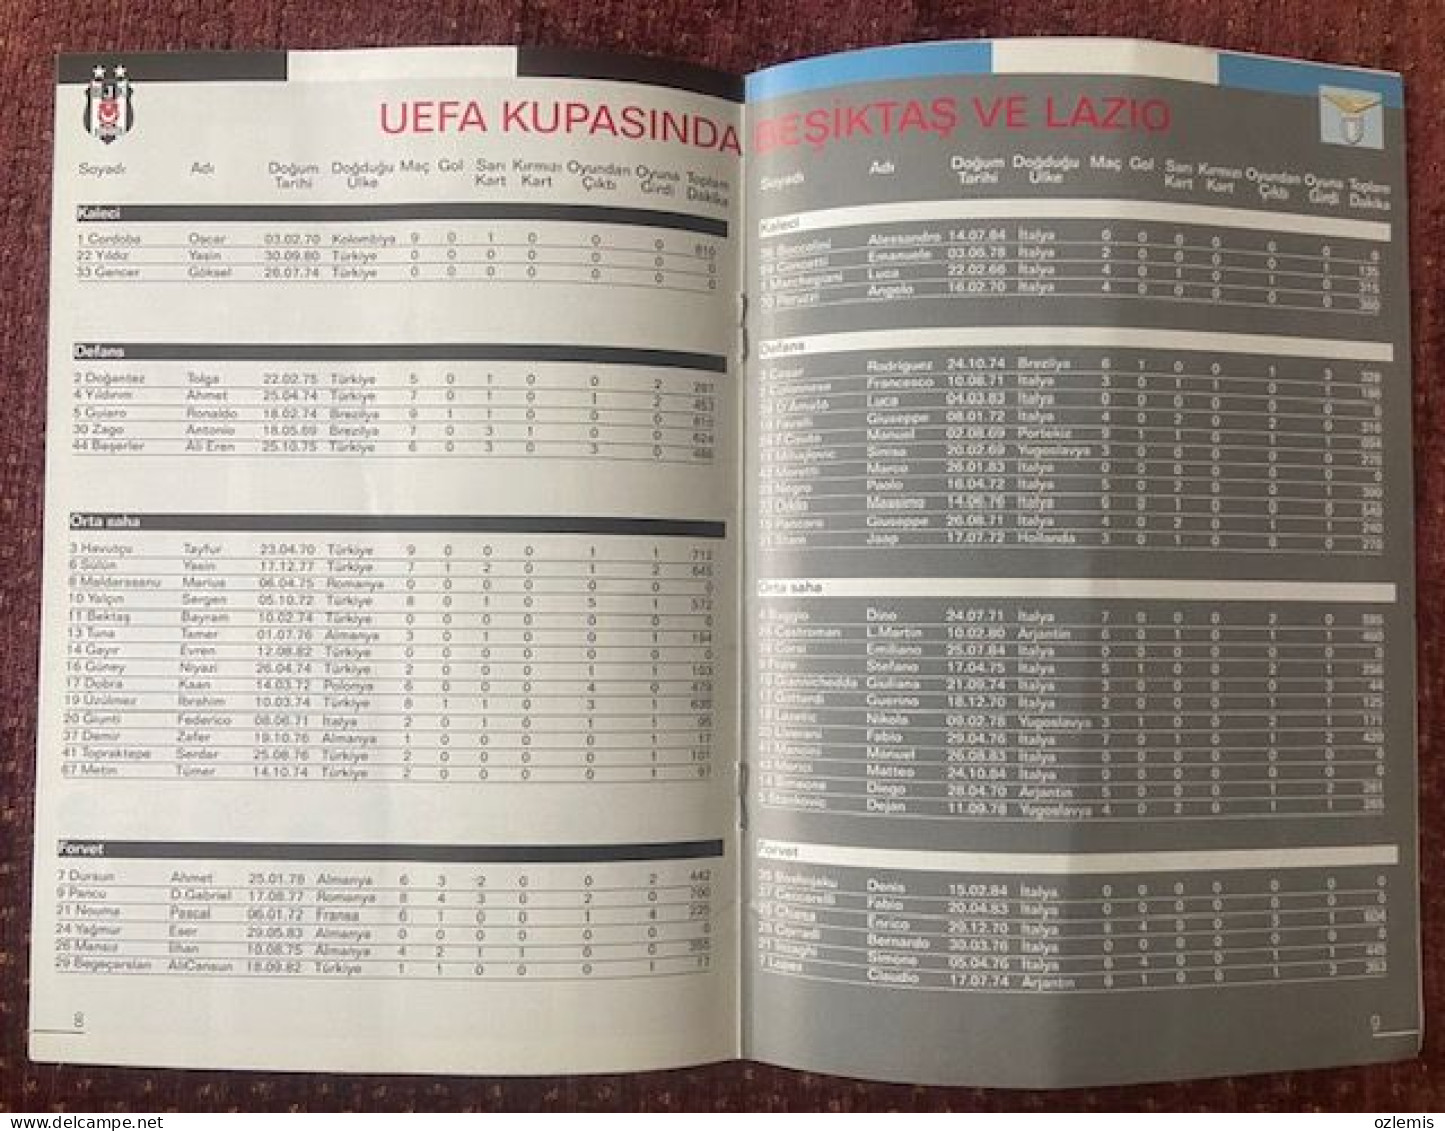 BESIKTAS -LAZIO   ,UEFA CUP LEAGUE   ,MATCH SCHEDULE 2003 - Books